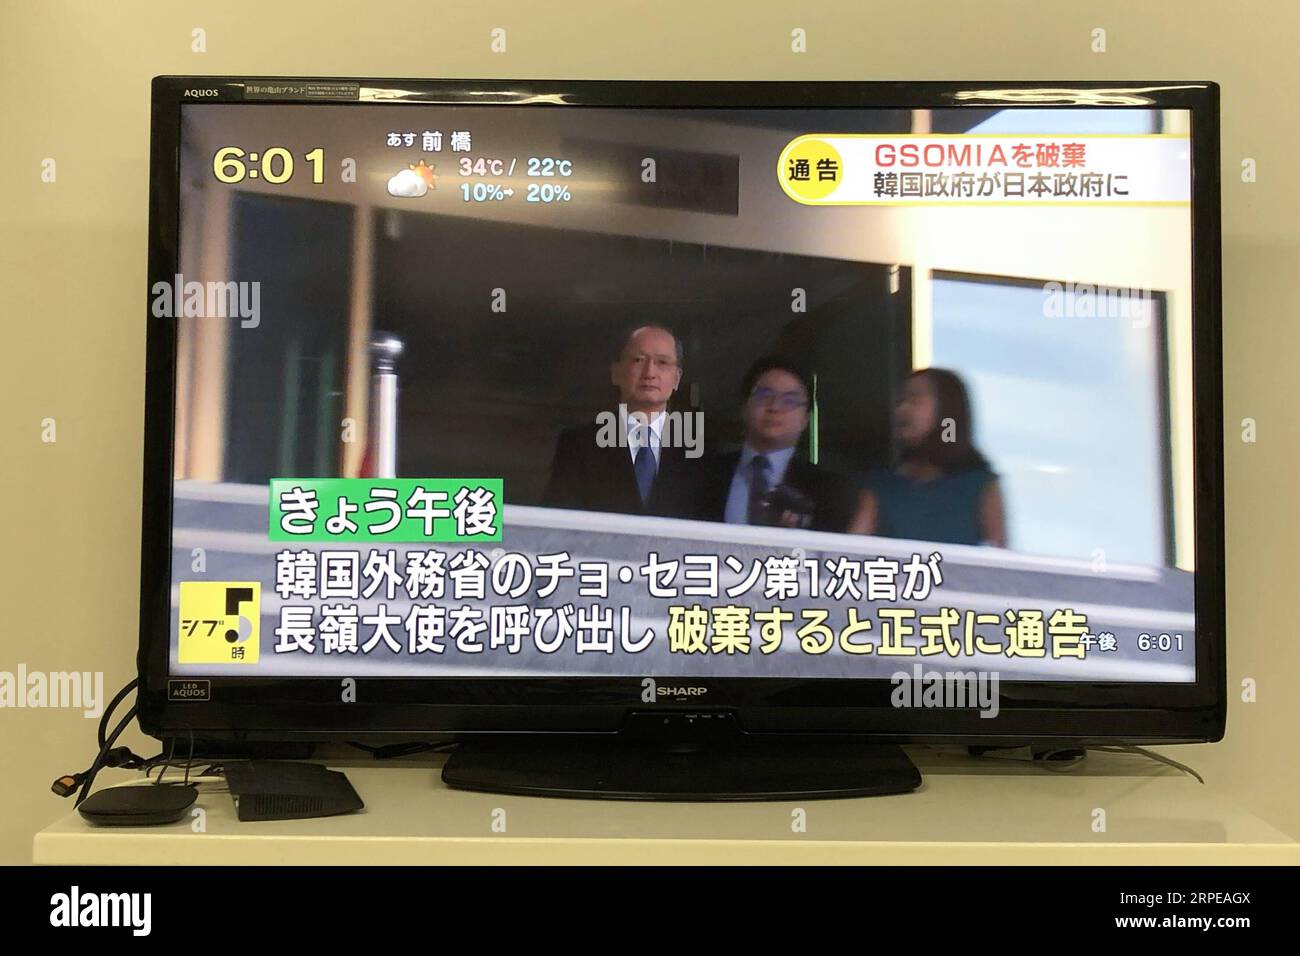 (190823) -- TOKYO, 23 août 2019 -- une photo prise avec un téléphone portable le 23 août 2019 à Tokyo, au Japon montre une émission télévisée en direct montrant l'ambassadeur japonais en Corée du Sud Yasumasa Nagamine (1e L) en route pour accepter l'avis de la Corée du Sud de mettre fin au pacte de partage des renseignements à Séoul, en Corée du Sud. Vendredi, le Premier ministre japonais Shinzo Abe a exhorté la Corée du Sud à tenir ses promesses après que Séoul eut décidé de mettre fin à un pacte clé de partage du renseignement entre les deux pays. JAPON-TOKYO-CORÉE DU SUD-PACTE DE PARTAGE DU RENSEIGNEMENT DUXXIAOYI PUBLICATIONXNOTXINXCHN Banque D'Images